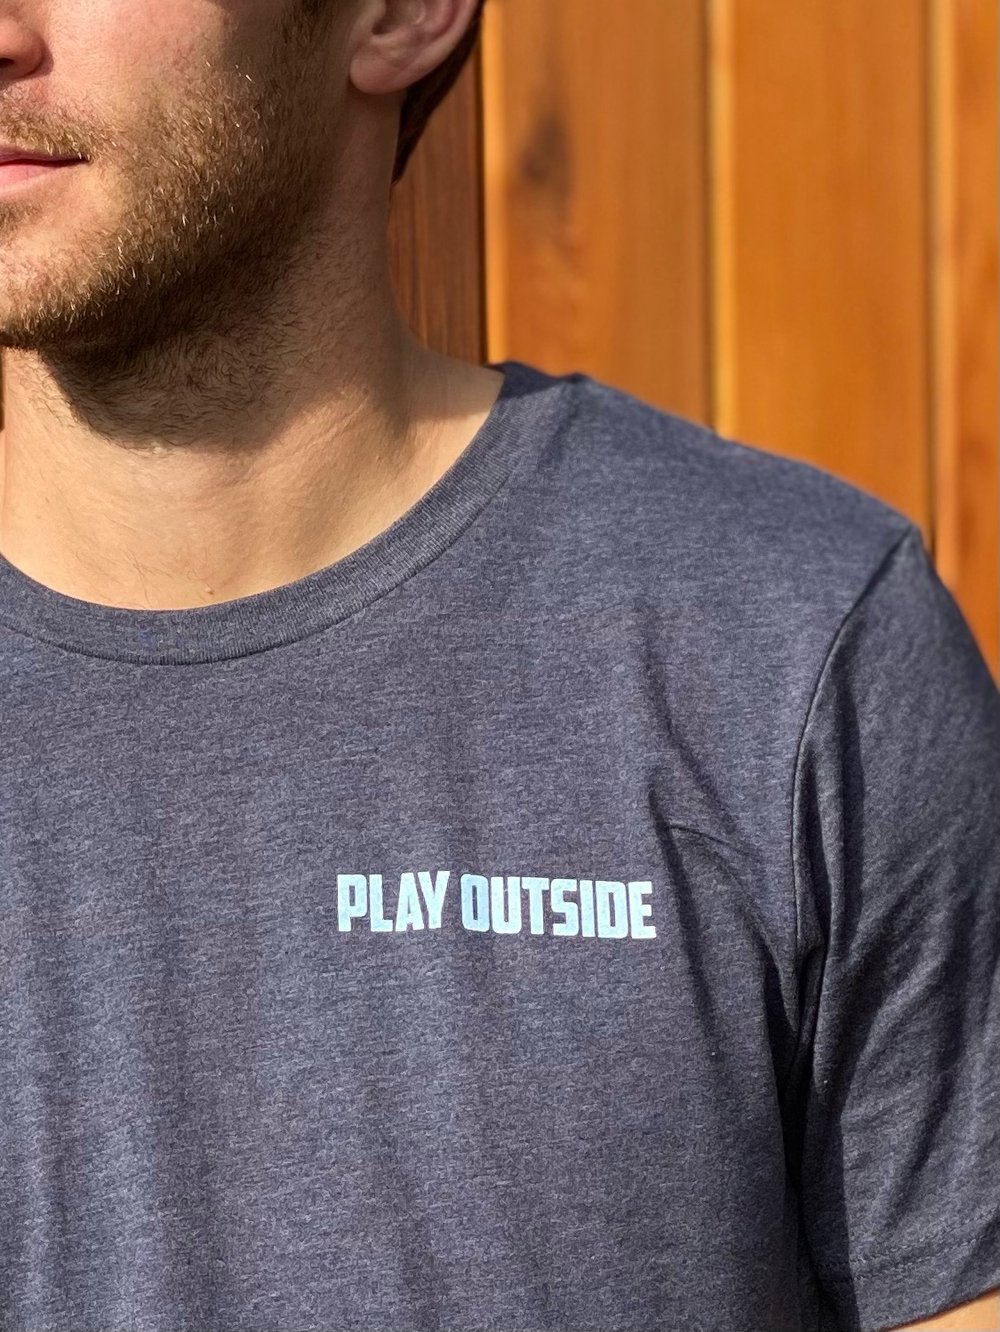 Play outside pond hockey t shirt